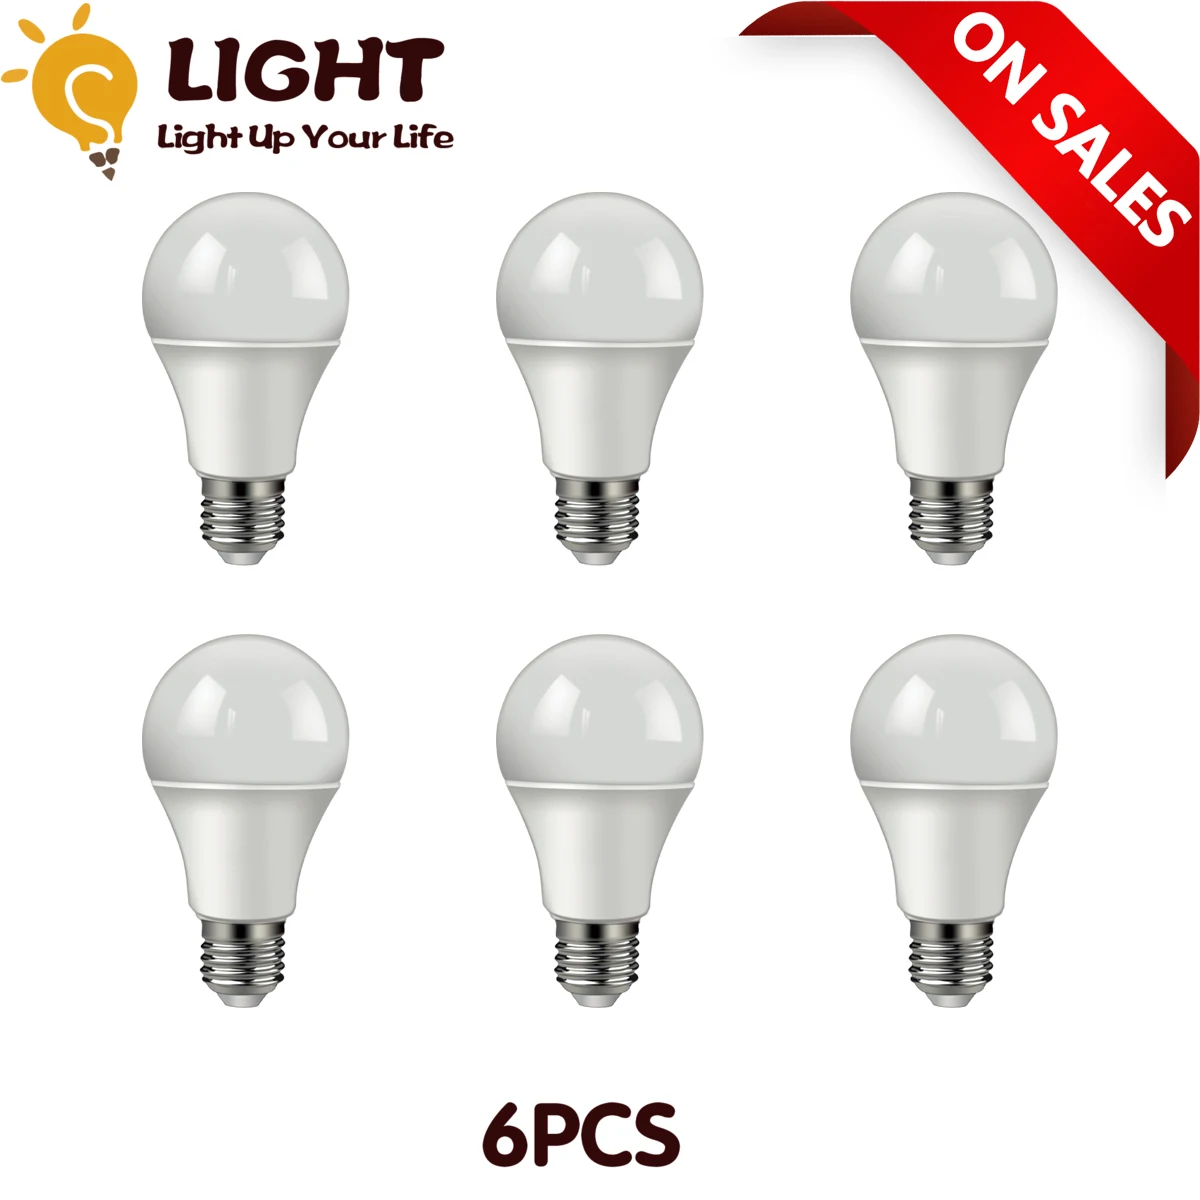 

6pcs LED Bulb Lamps A60 E27 B22 AC220V- 240V Light Bulb Real Power 10W 12W 3000K-6000K Lampada Living Room Home LED Bombilla